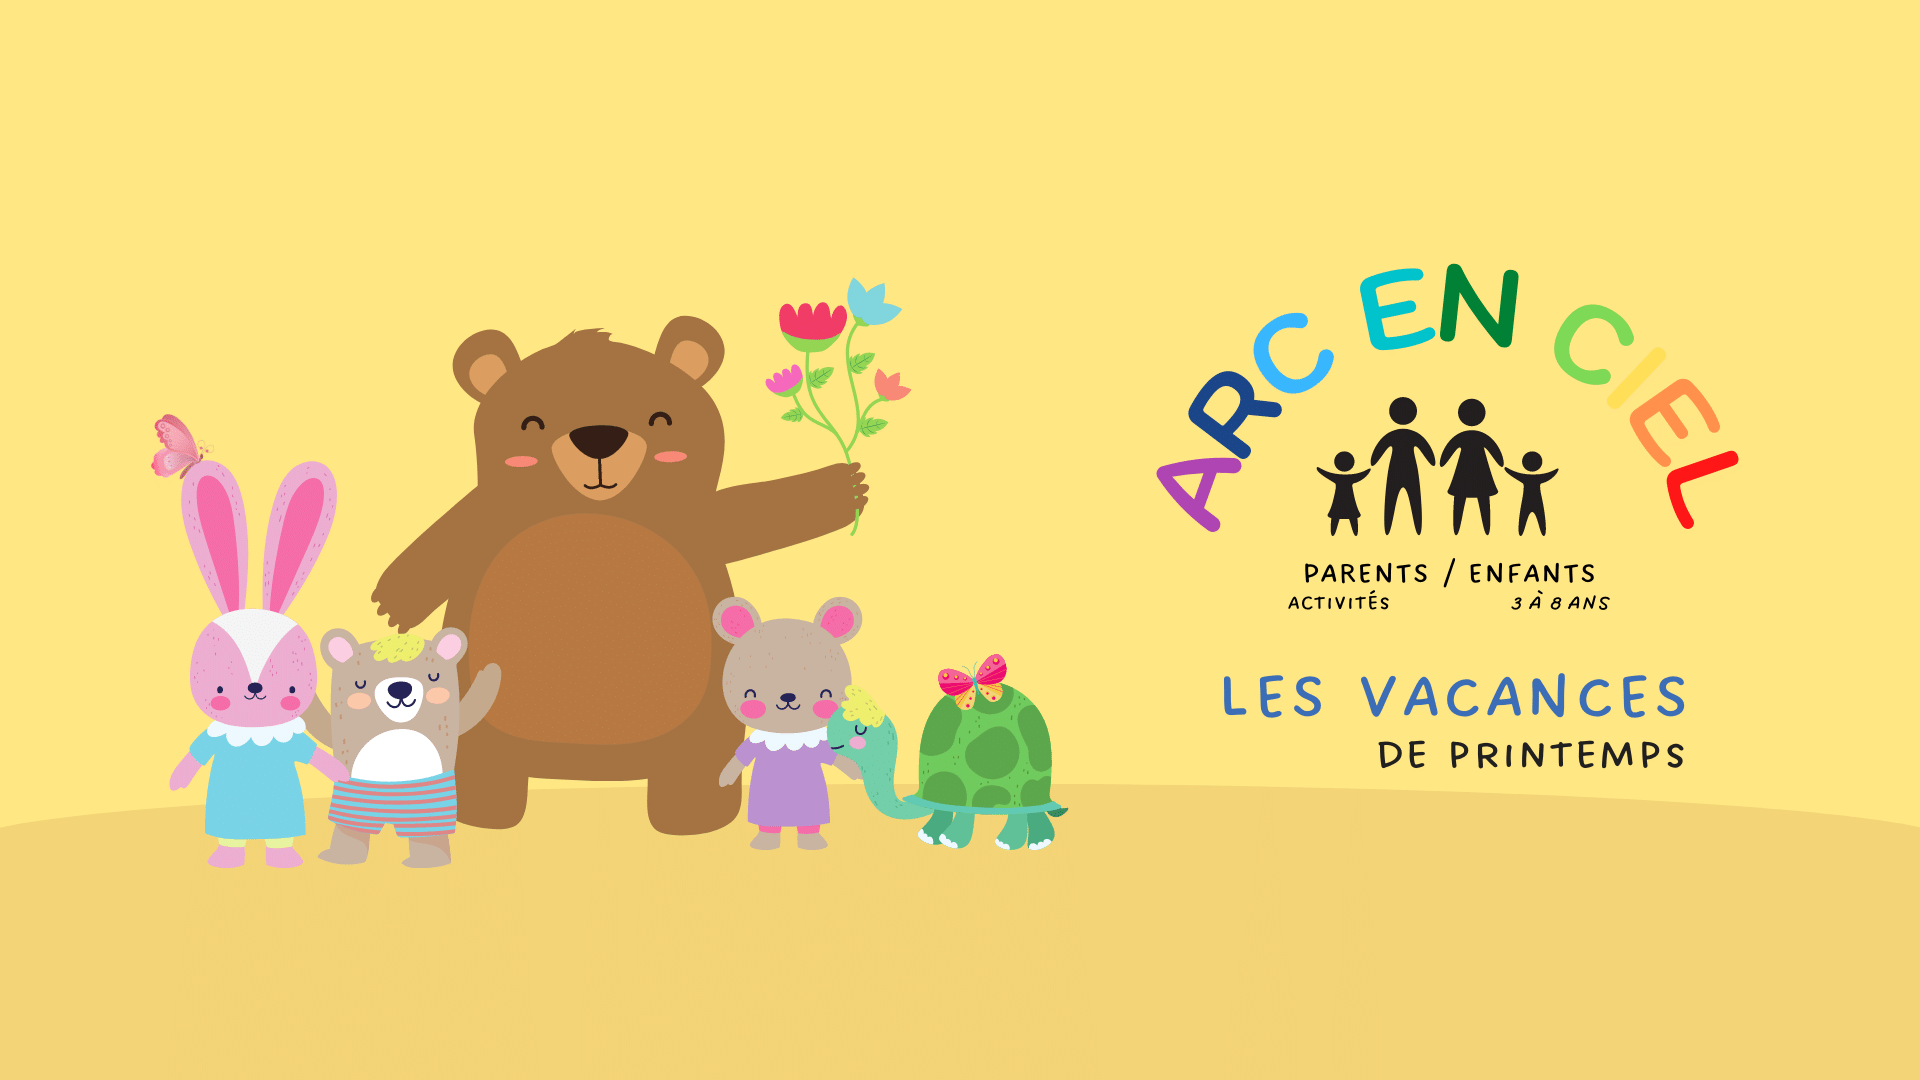 You are currently viewing Planning des vacances de printemps 2023 – Arc en ciel – Parents/enfants